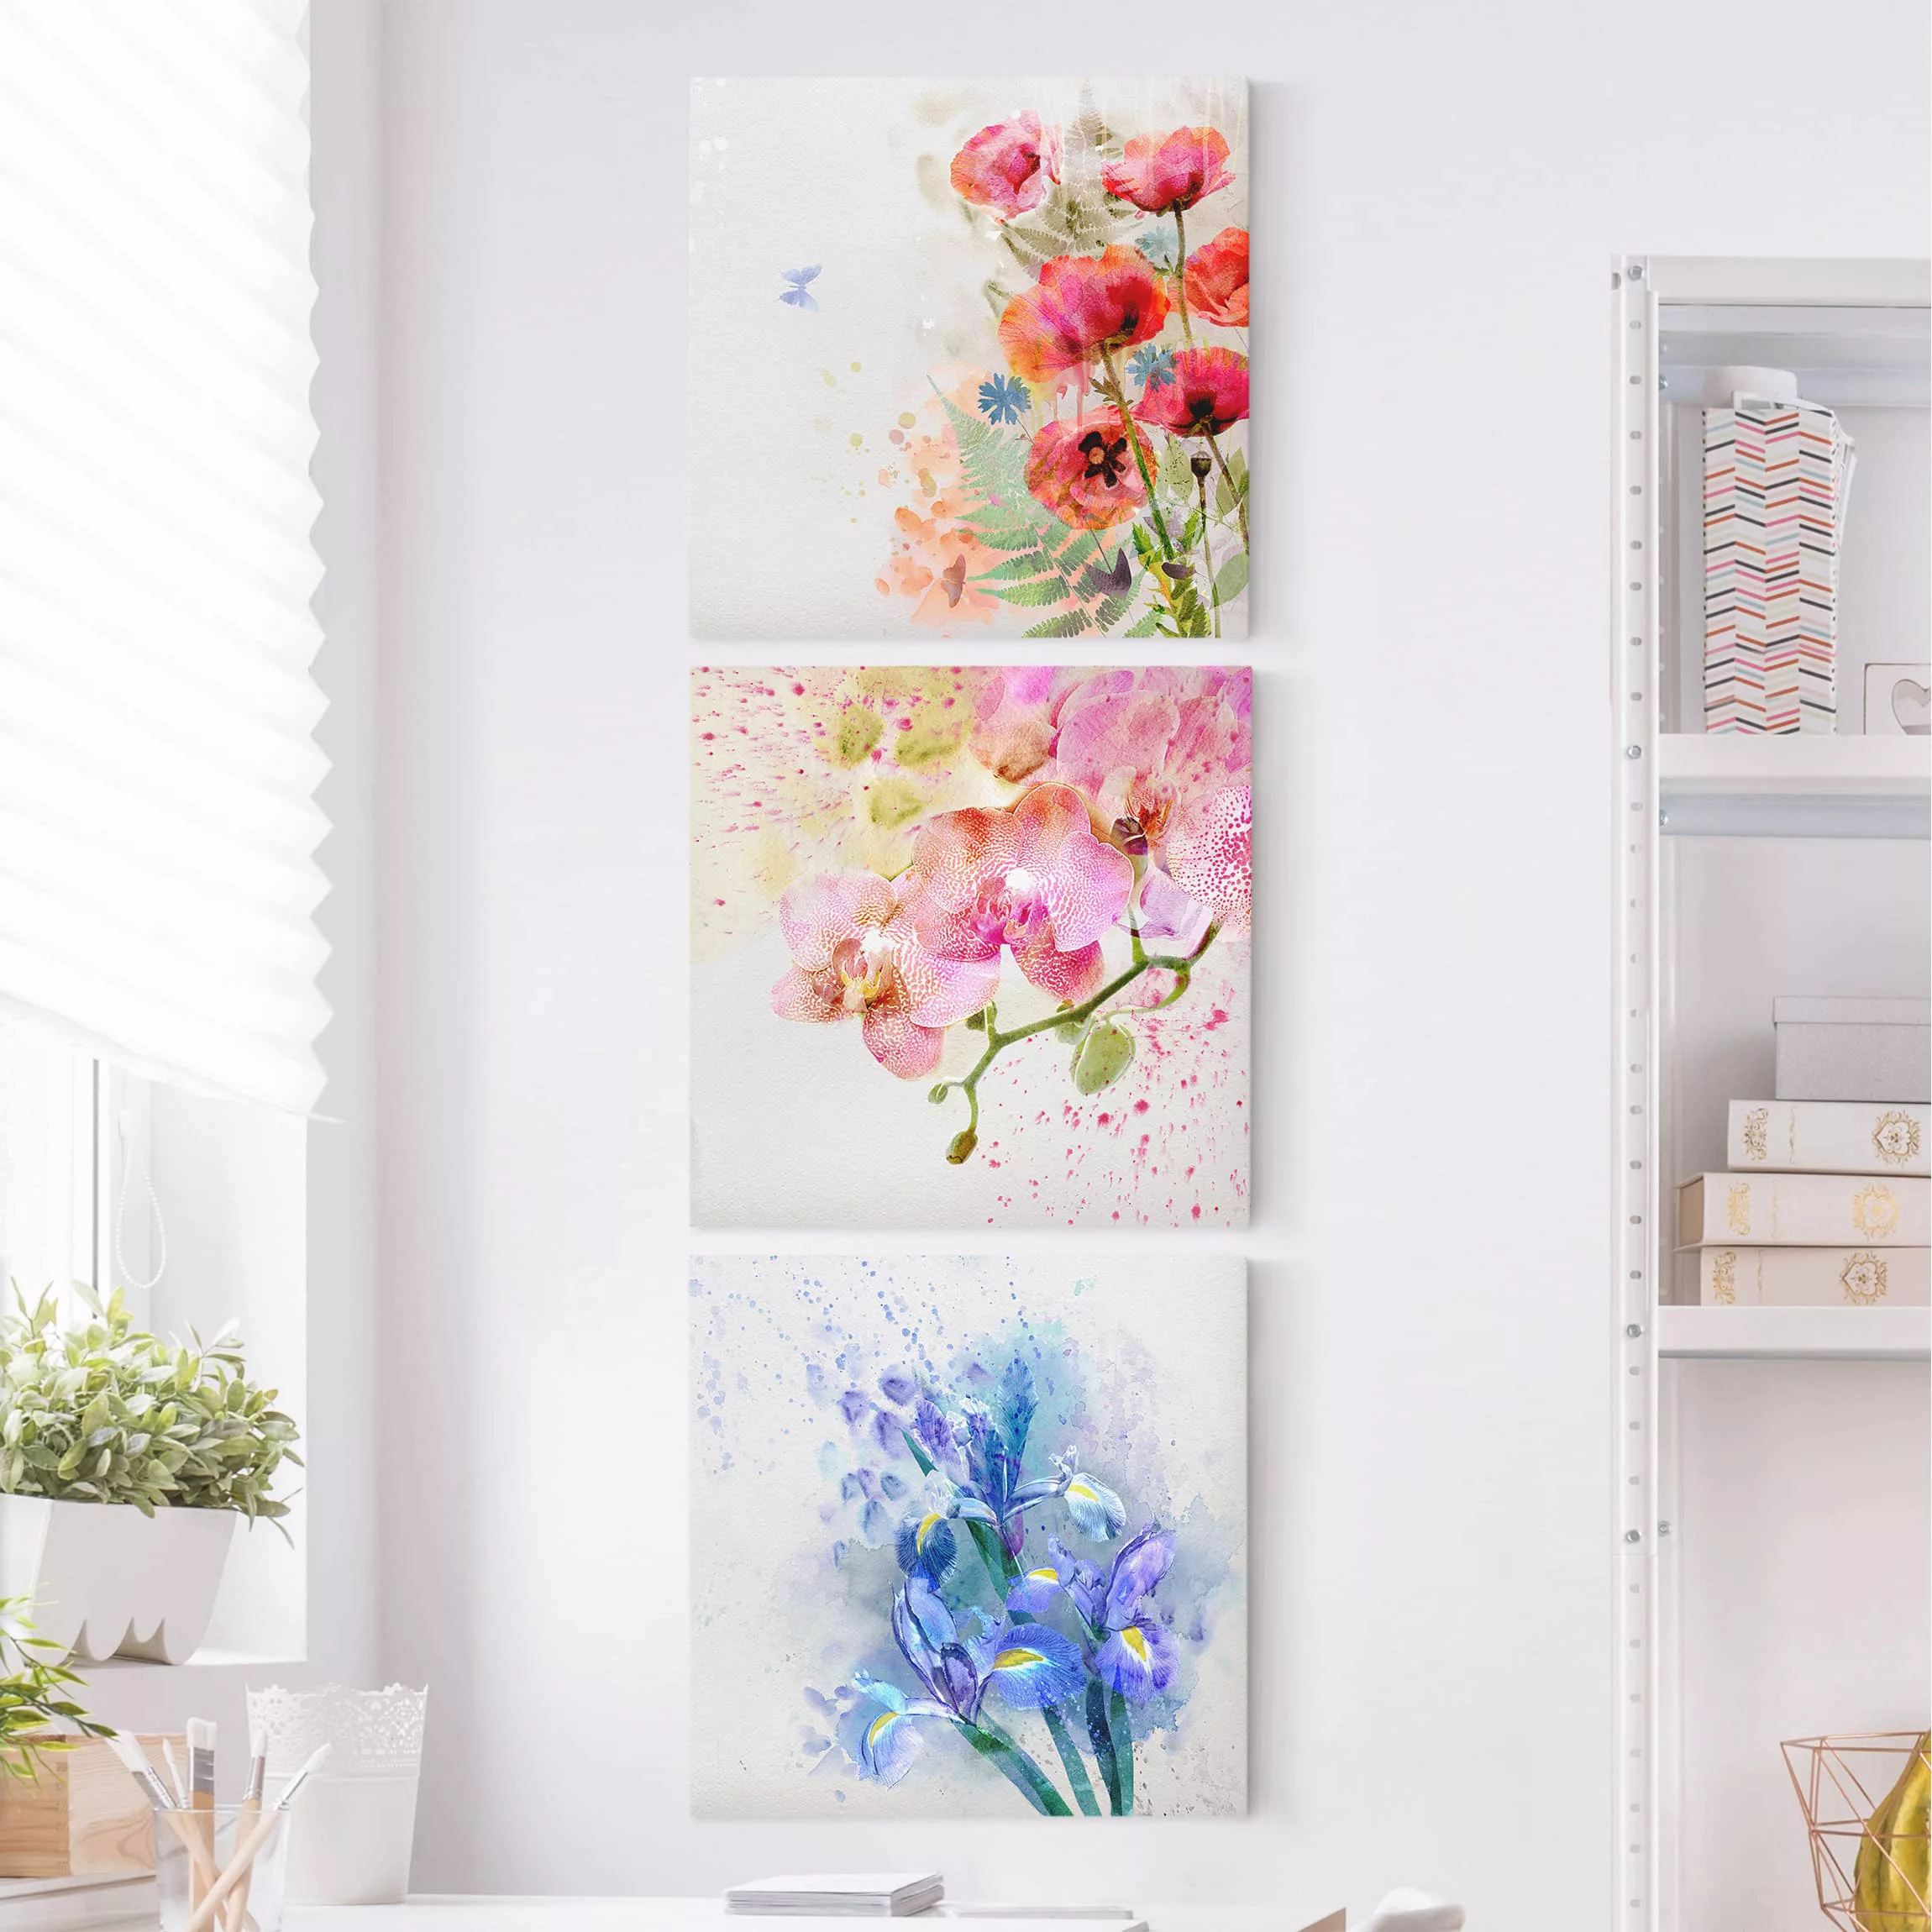 3-teiliges Leinwandbild Blumen - Quadrat Aquarell Blumen Trio günstig online kaufen